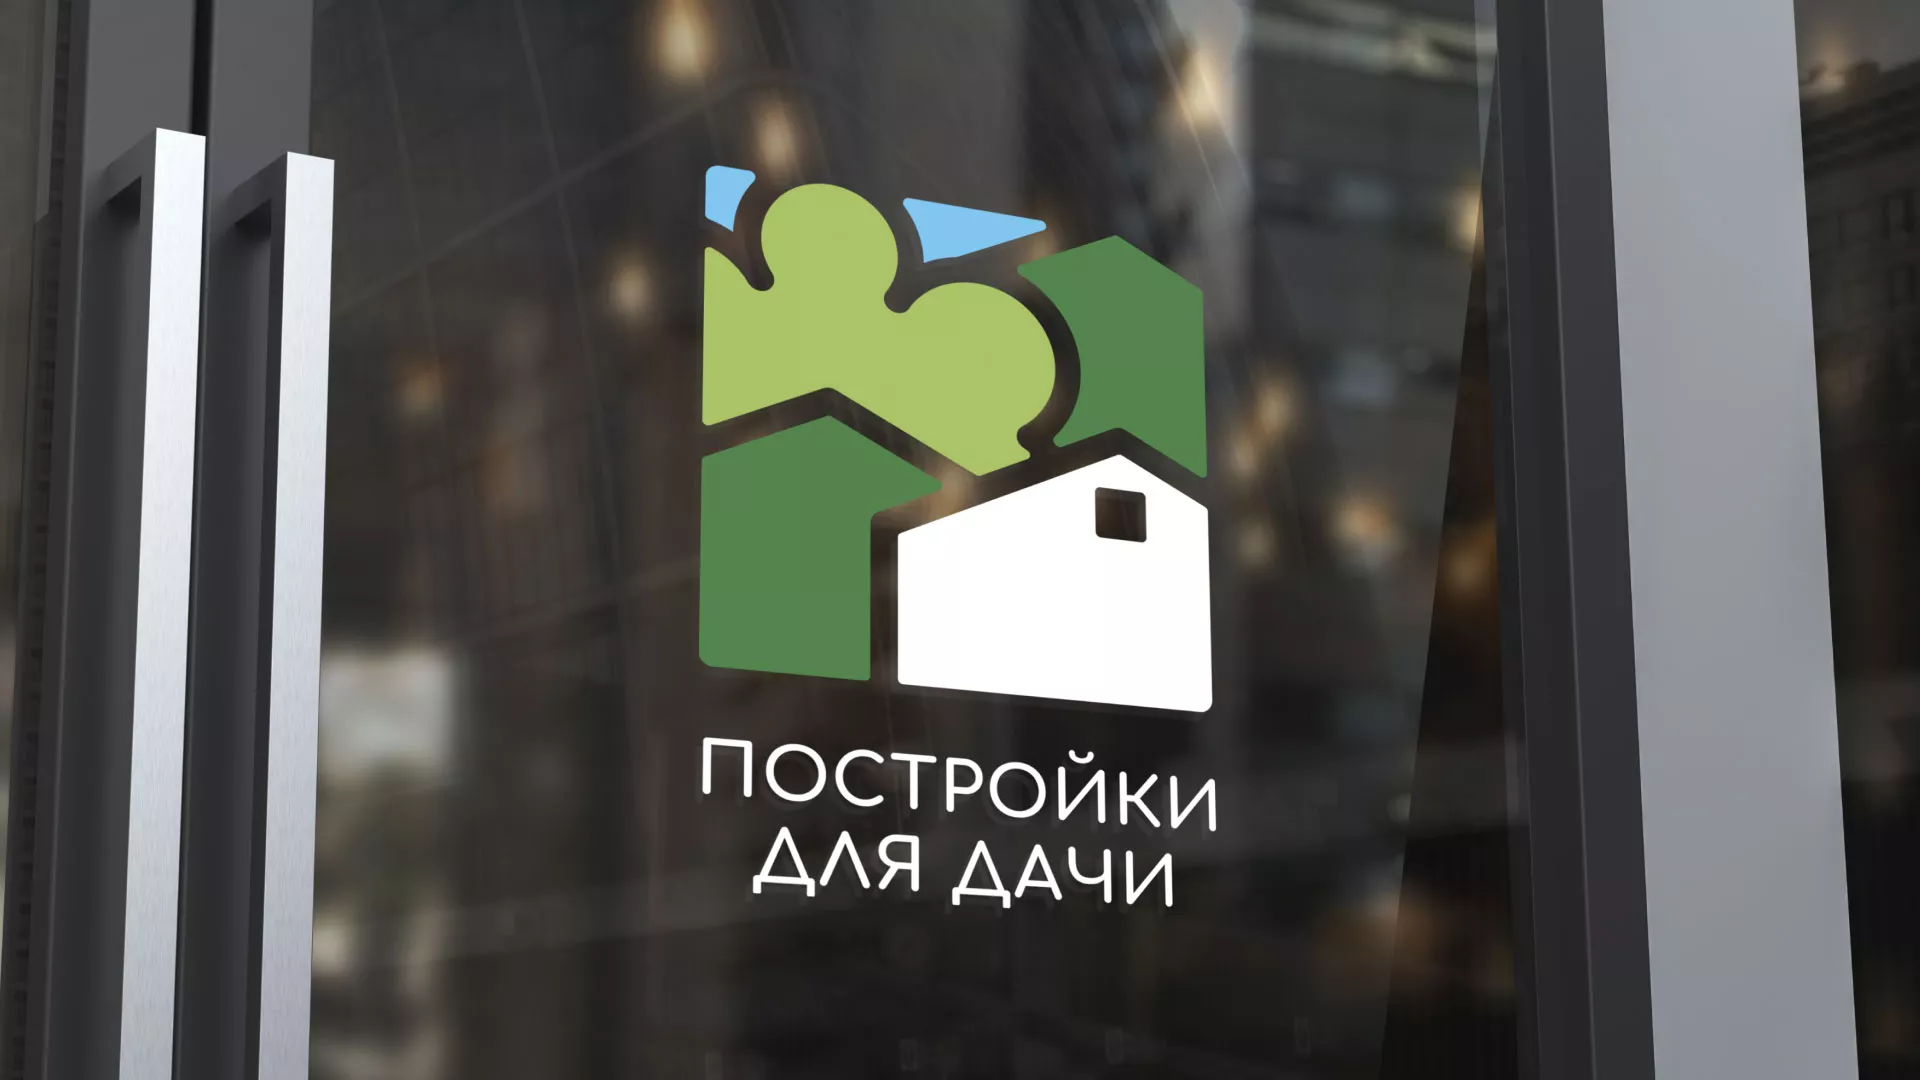 Разработка логотипа в Андреаполе для компании «Постройки для дачи»